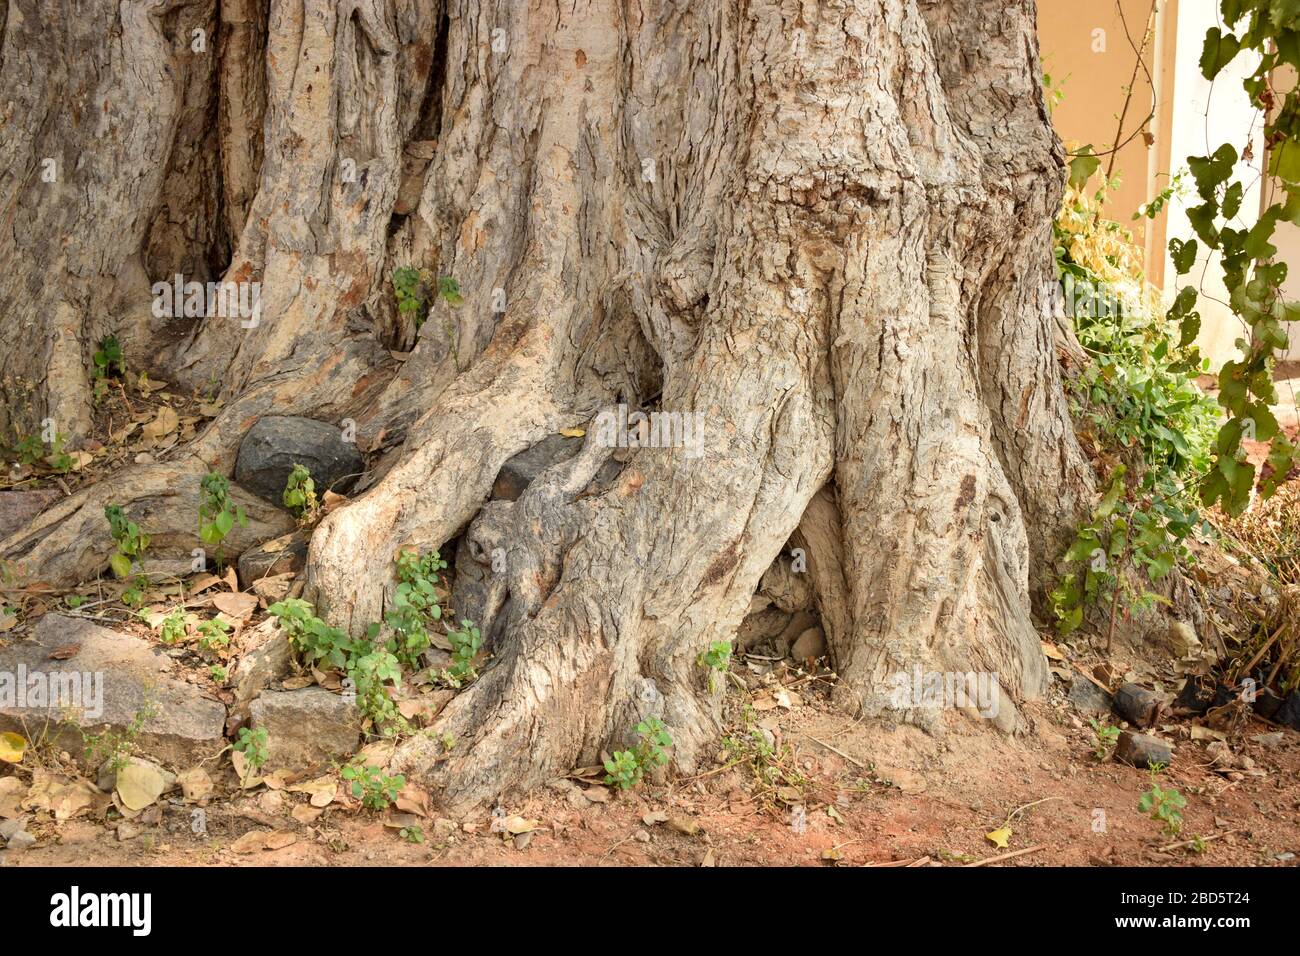 Photos des racines naturelles du Big Banyan Tree dans la jungle et le stock forestier Banque D'Images